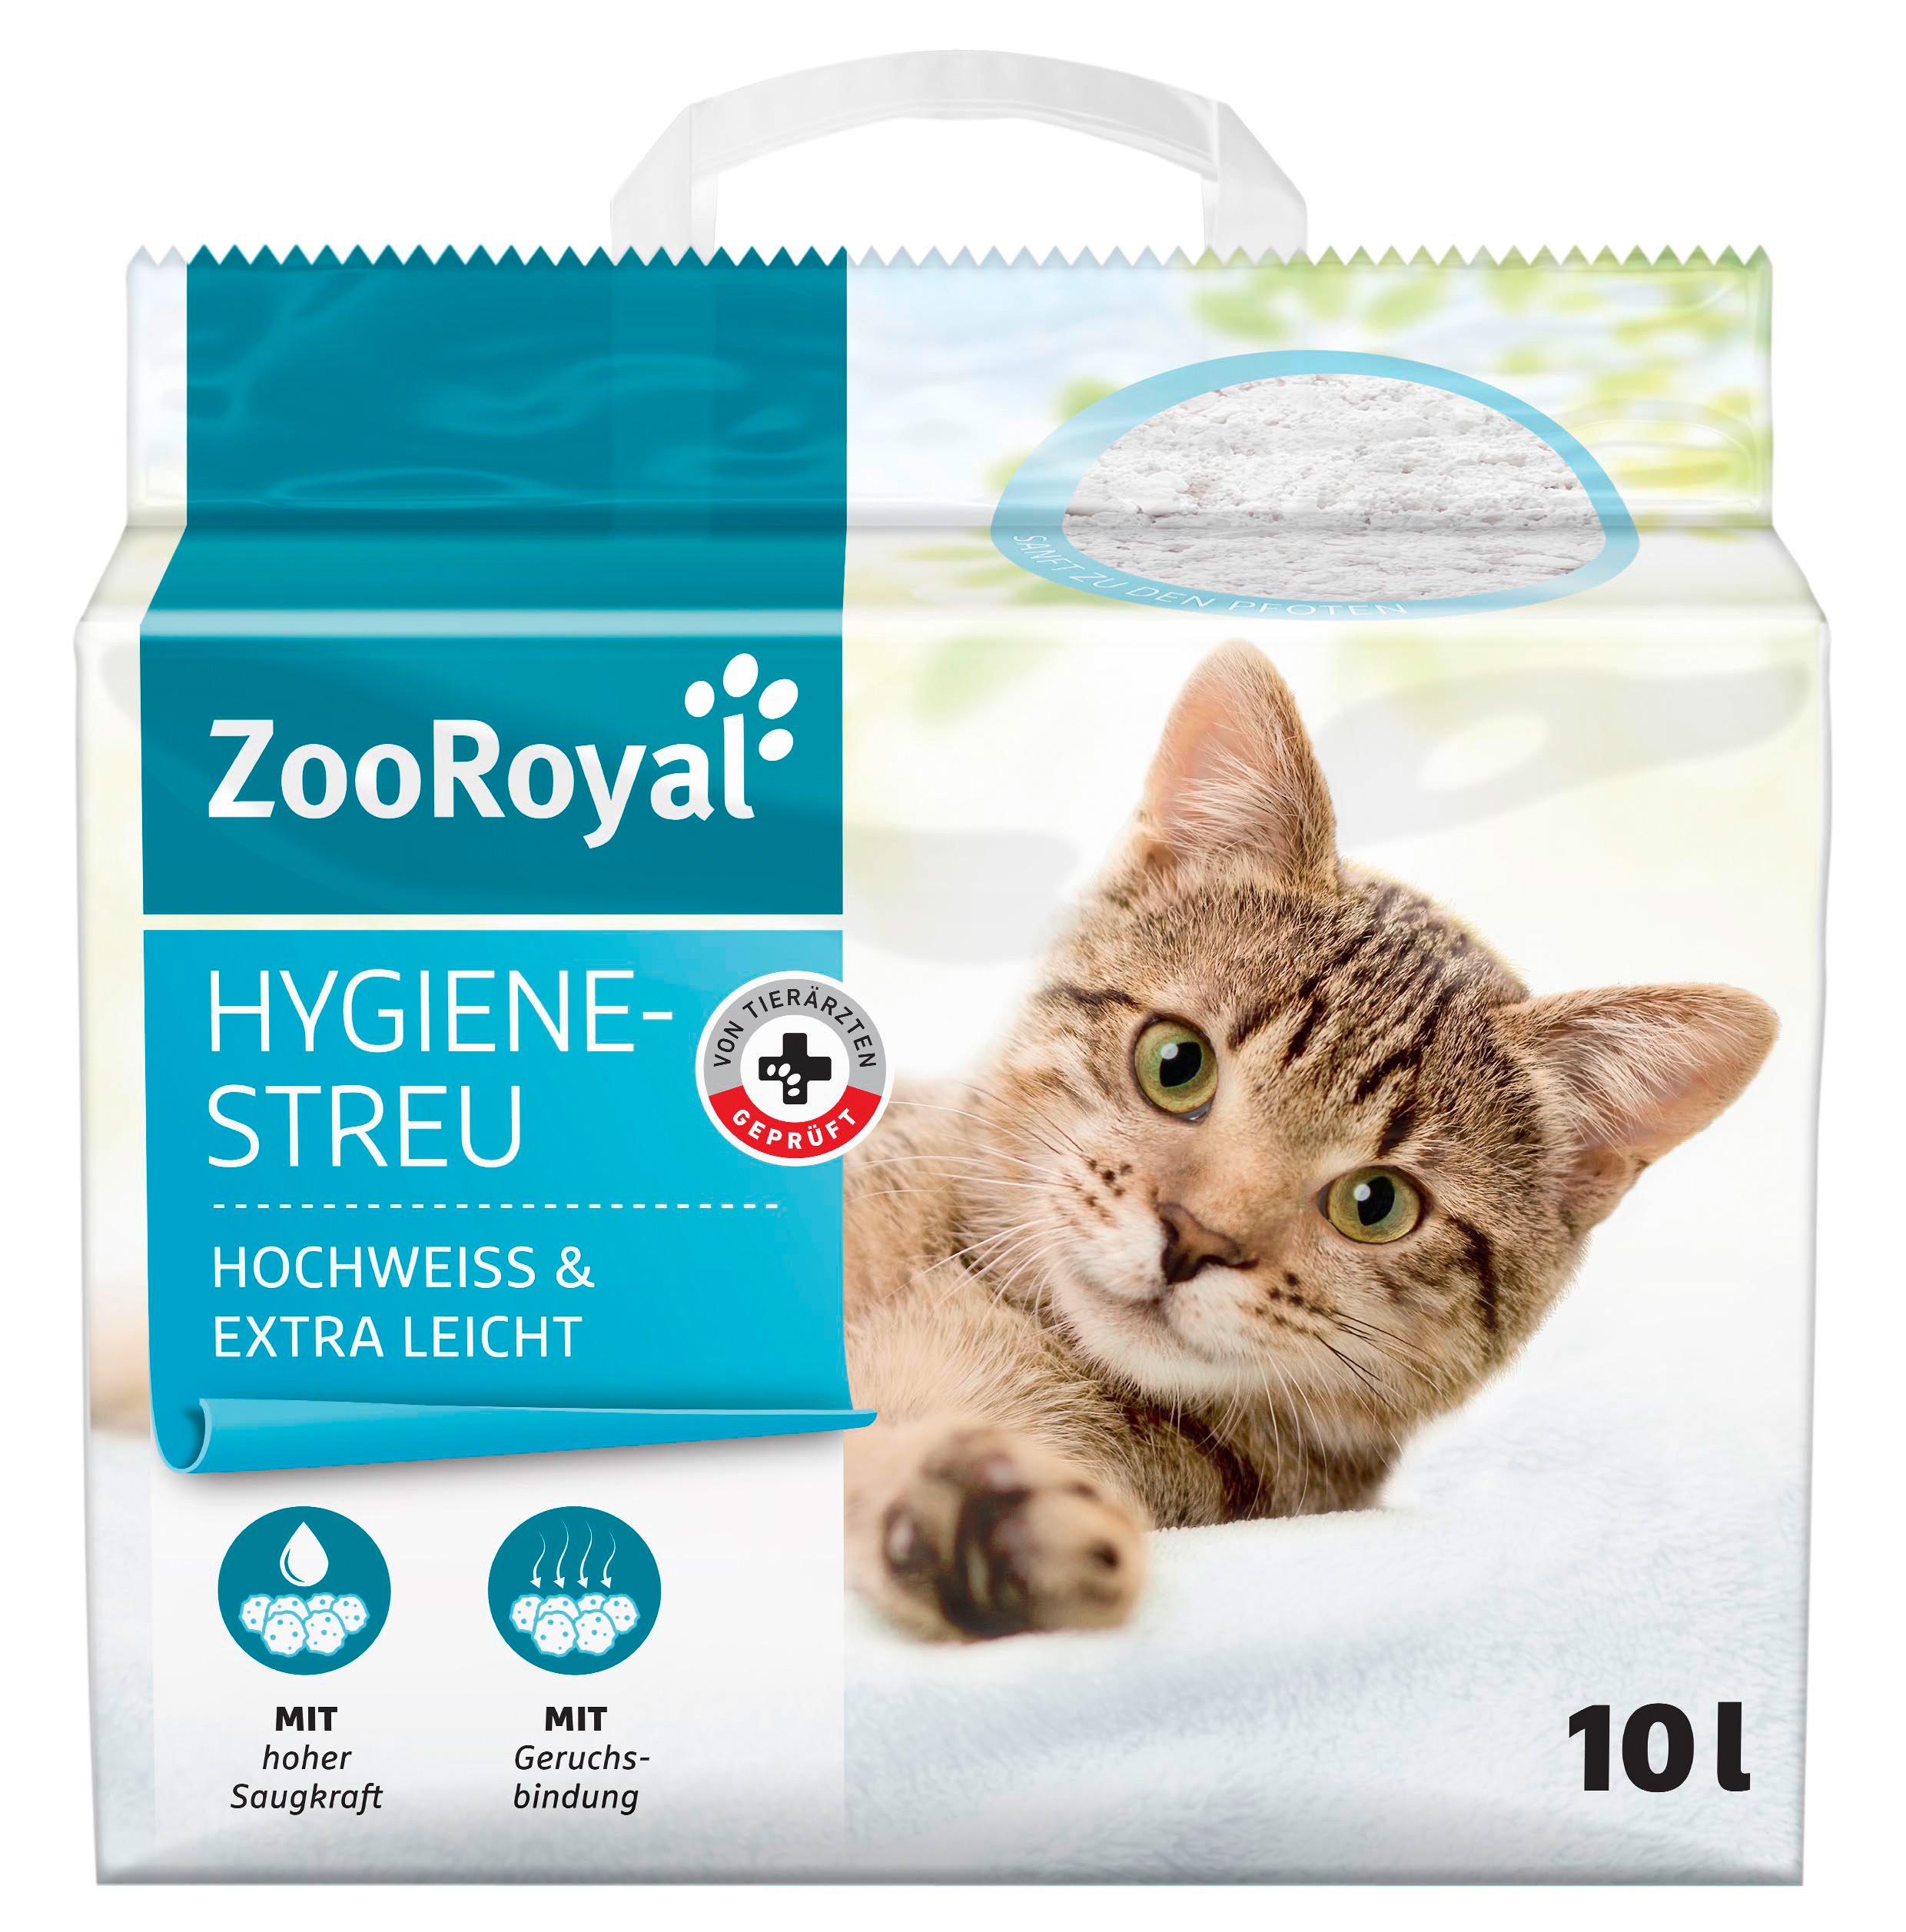 ZooRoyal Hygienestreu hochweiss & extra leicht 10l